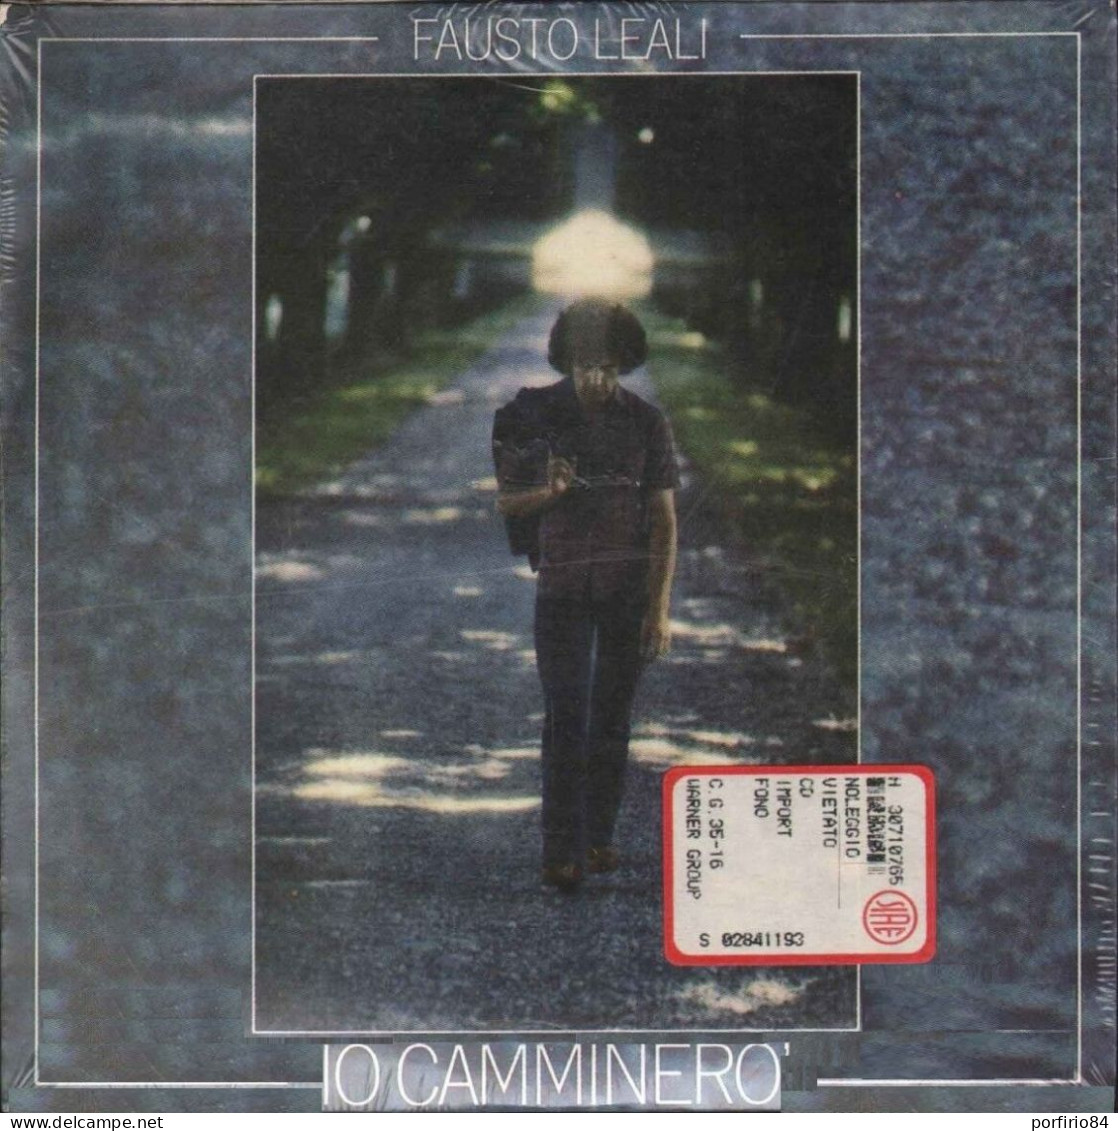 FAUSTO LEALI CD IO CAMMINERO' - A CHI 1987 - SIGILLATO DA COLLEZIONE - Altri - Musica Italiana